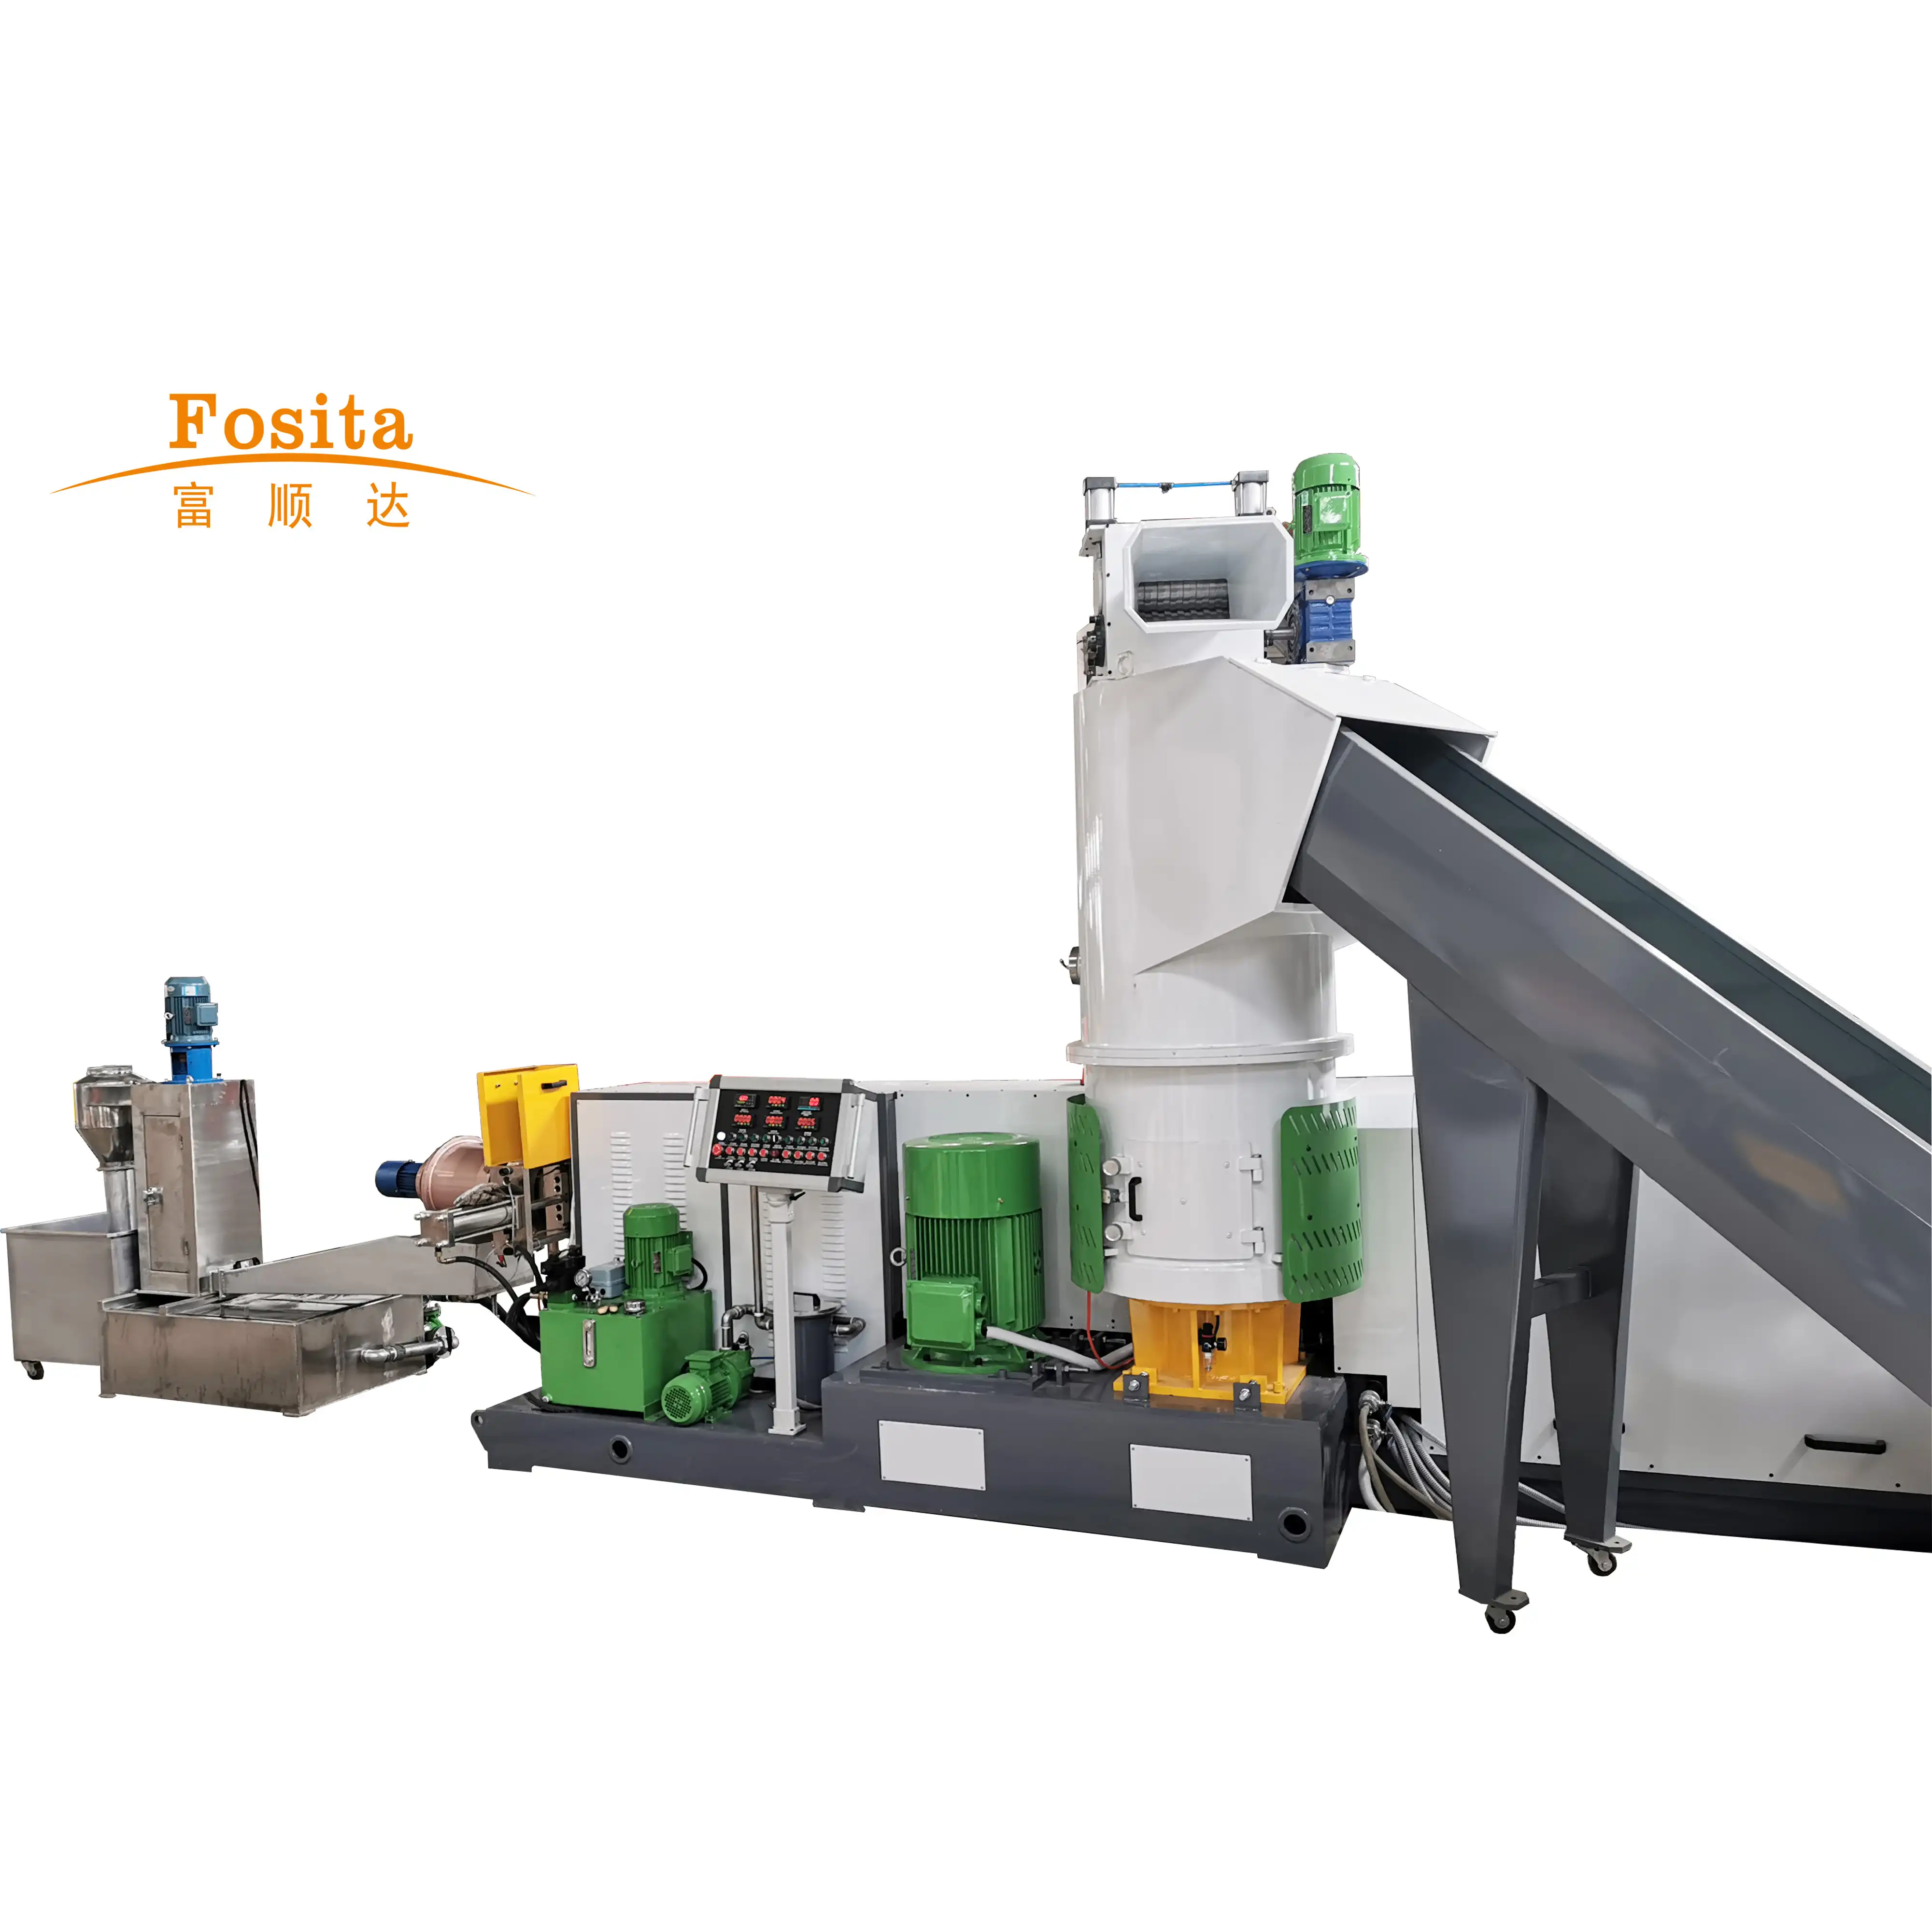 Fosita PP PE ฟิล์มเครื่อง Granulating กับเครื่องอัดเม็ดพลาสติก